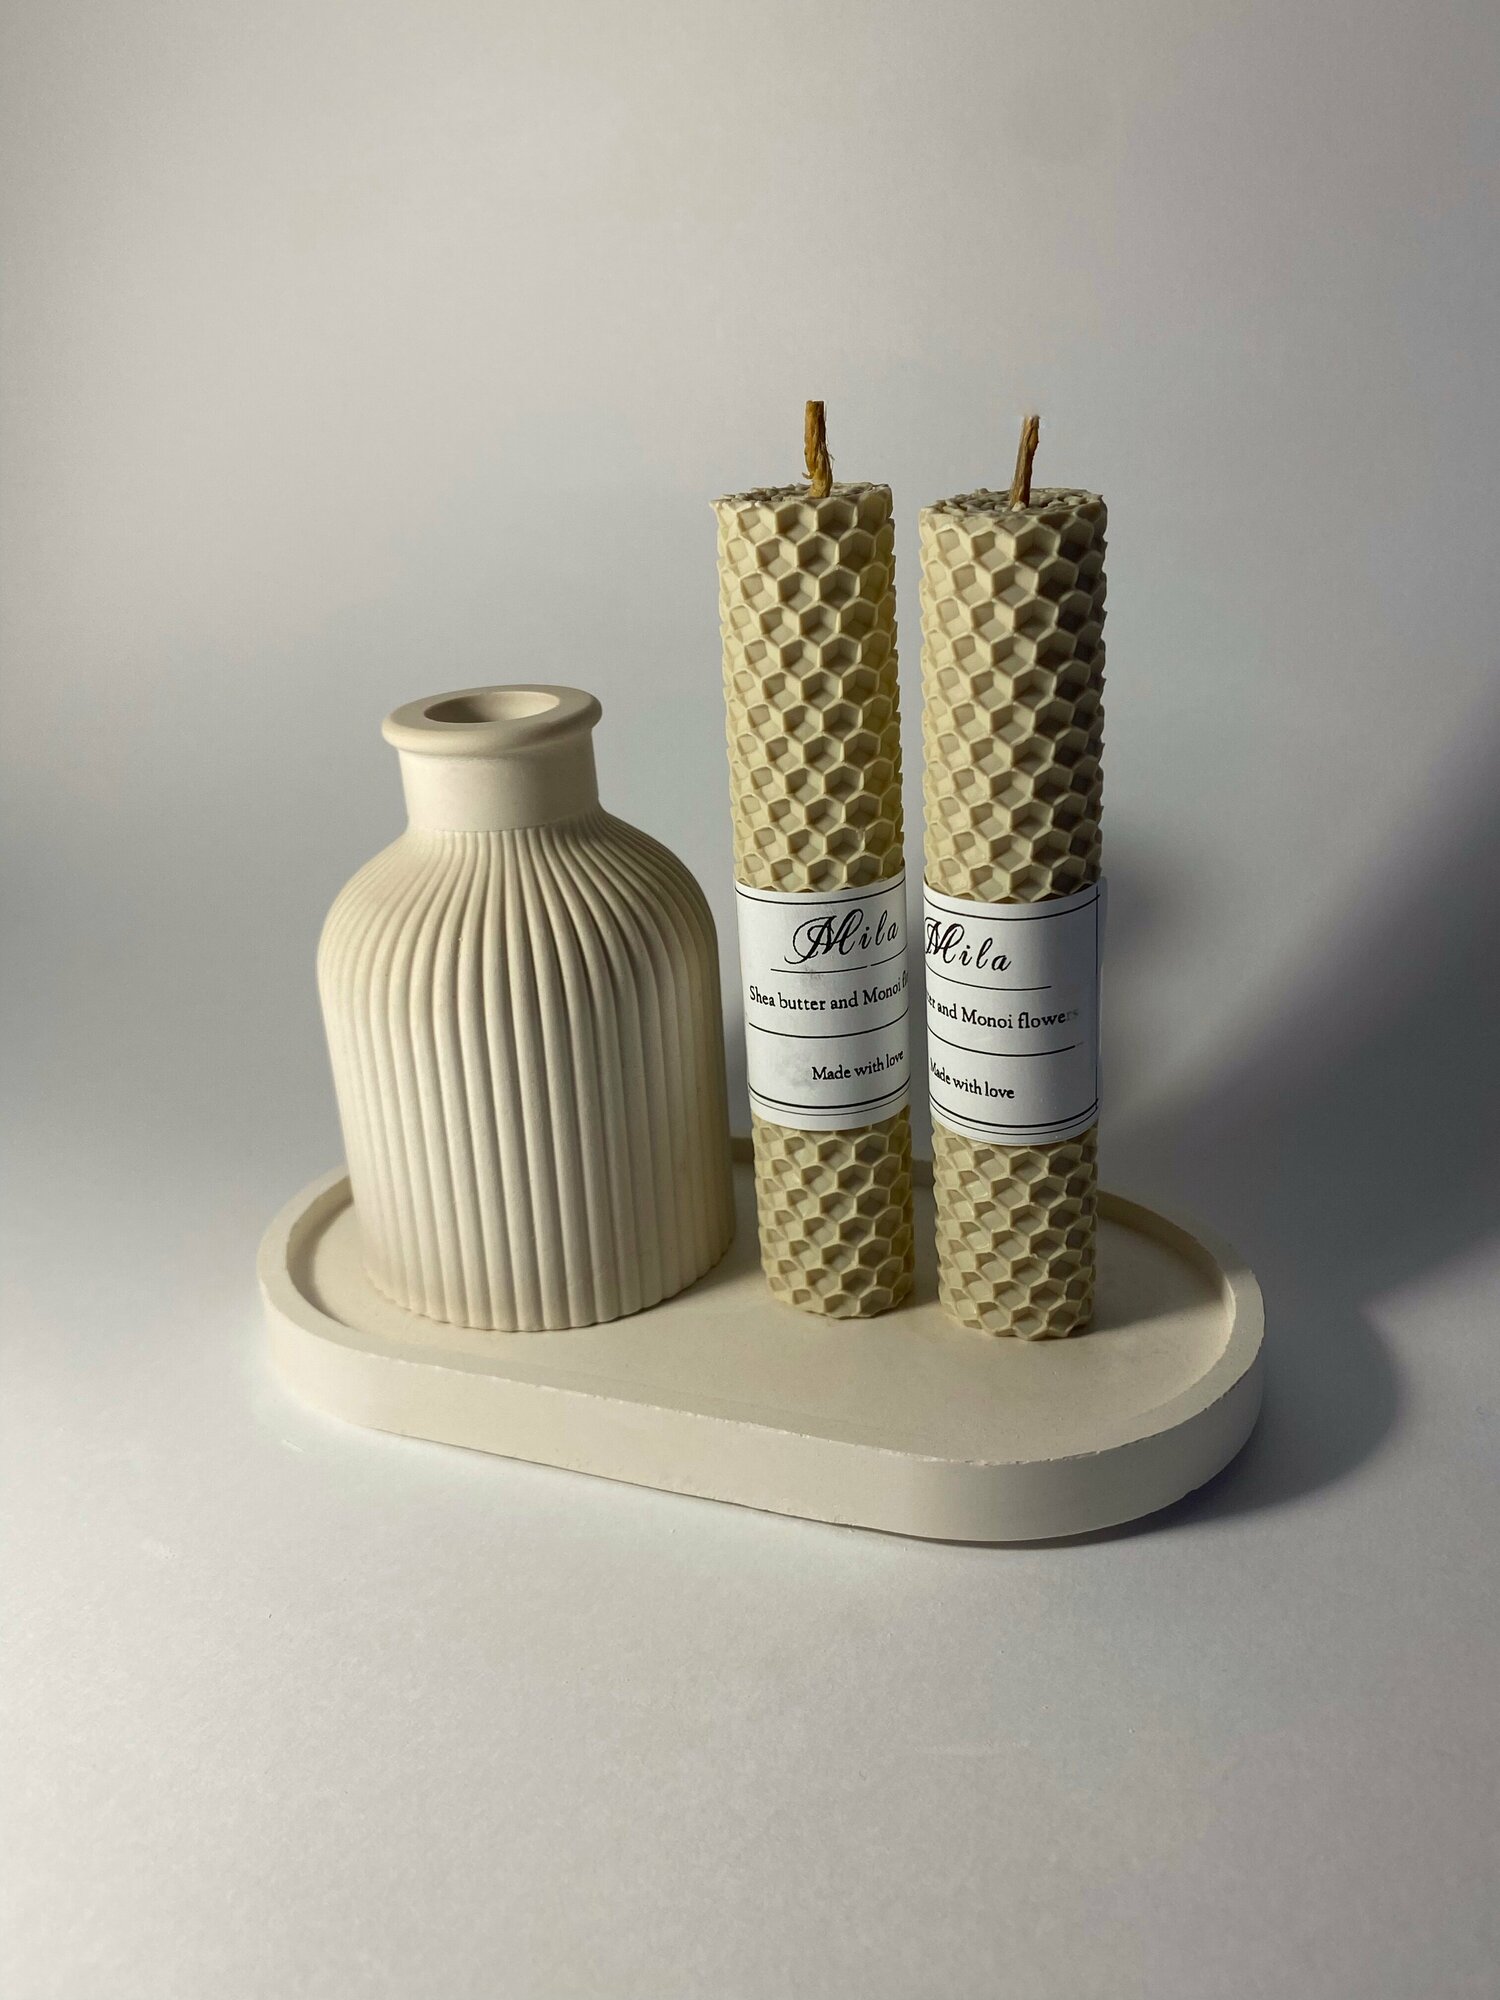 "Подарочный набор для дома" - ваза и поднос из гипса, свечи из вощины